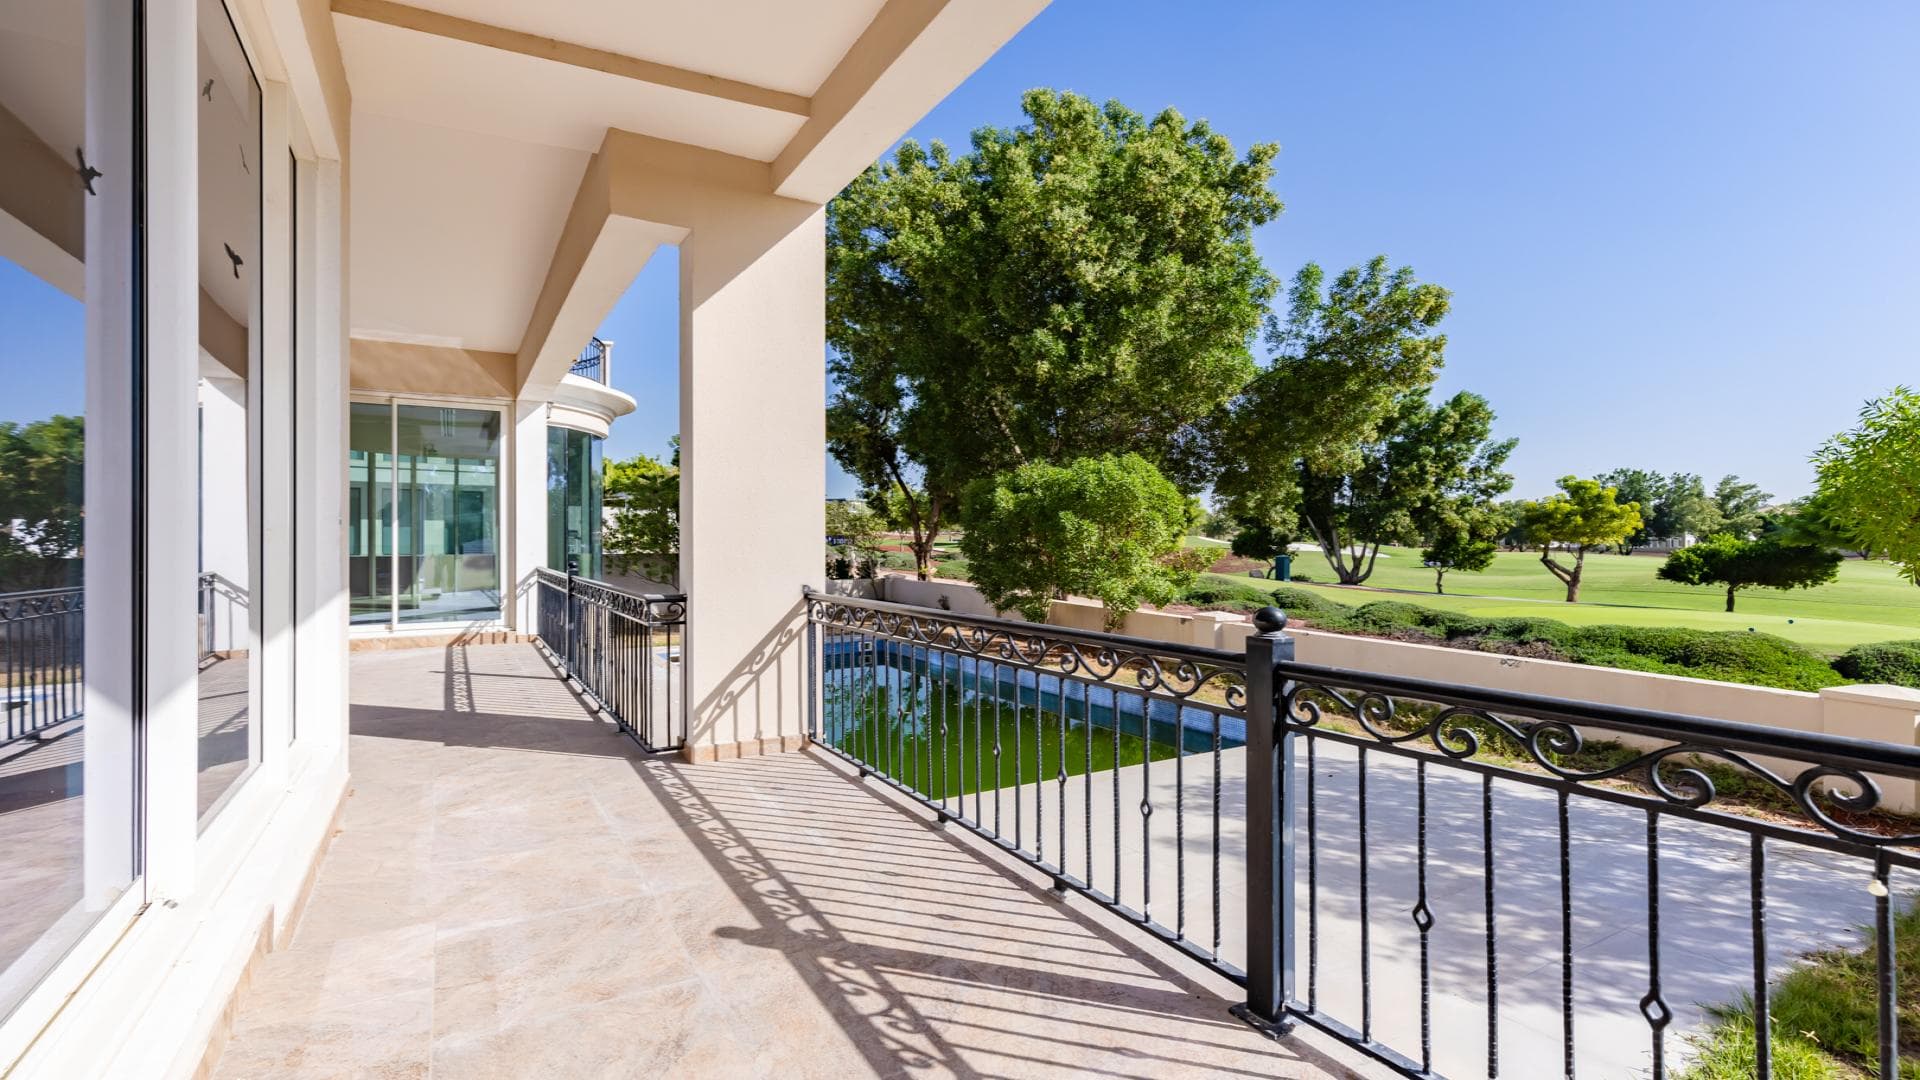 6 Bedroom Villa For Rent Al Thamam 01 Lp38808 2a337ea63de9d400.jpg